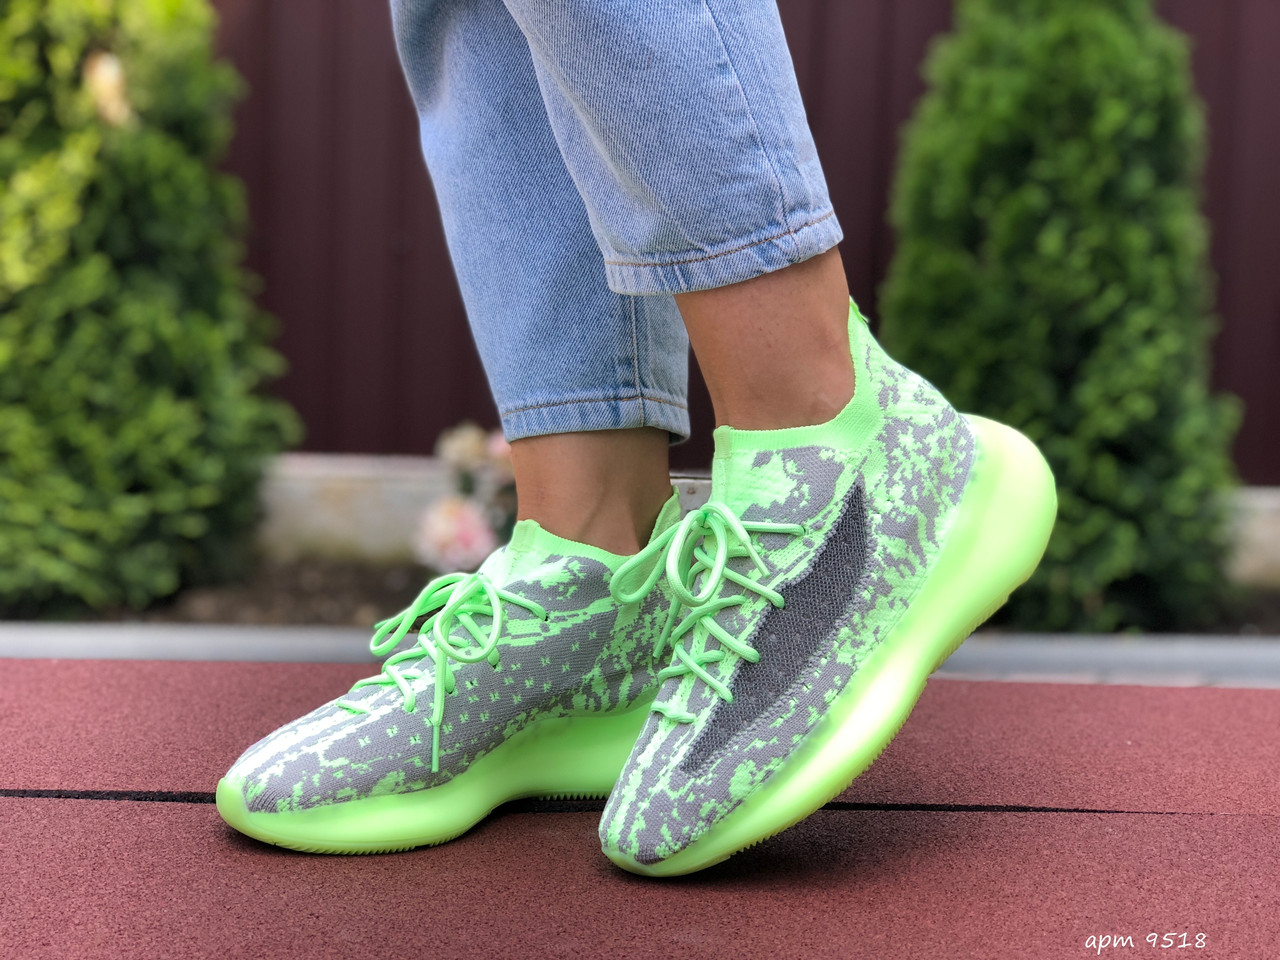 

Женские кроссовки в стиле Adidas Yeezy Boost 380, сетка, салатовые, 38 (24,1 см), размеры:38,39,40